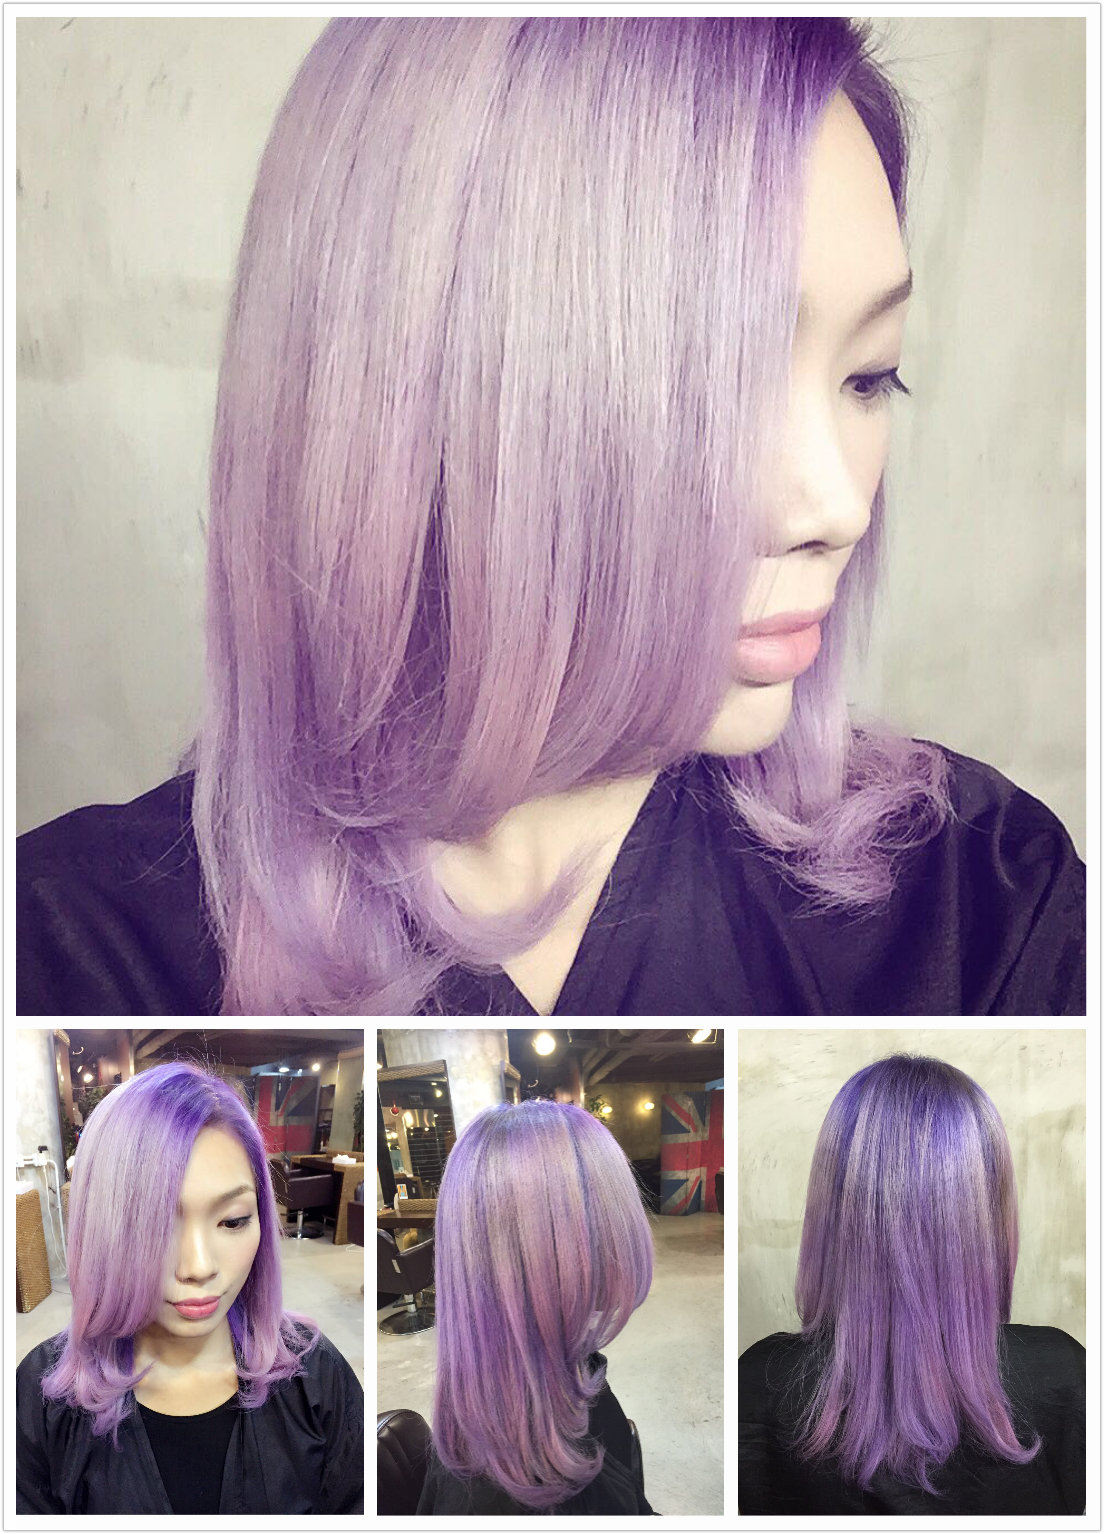 髮型作品參考:灰紫